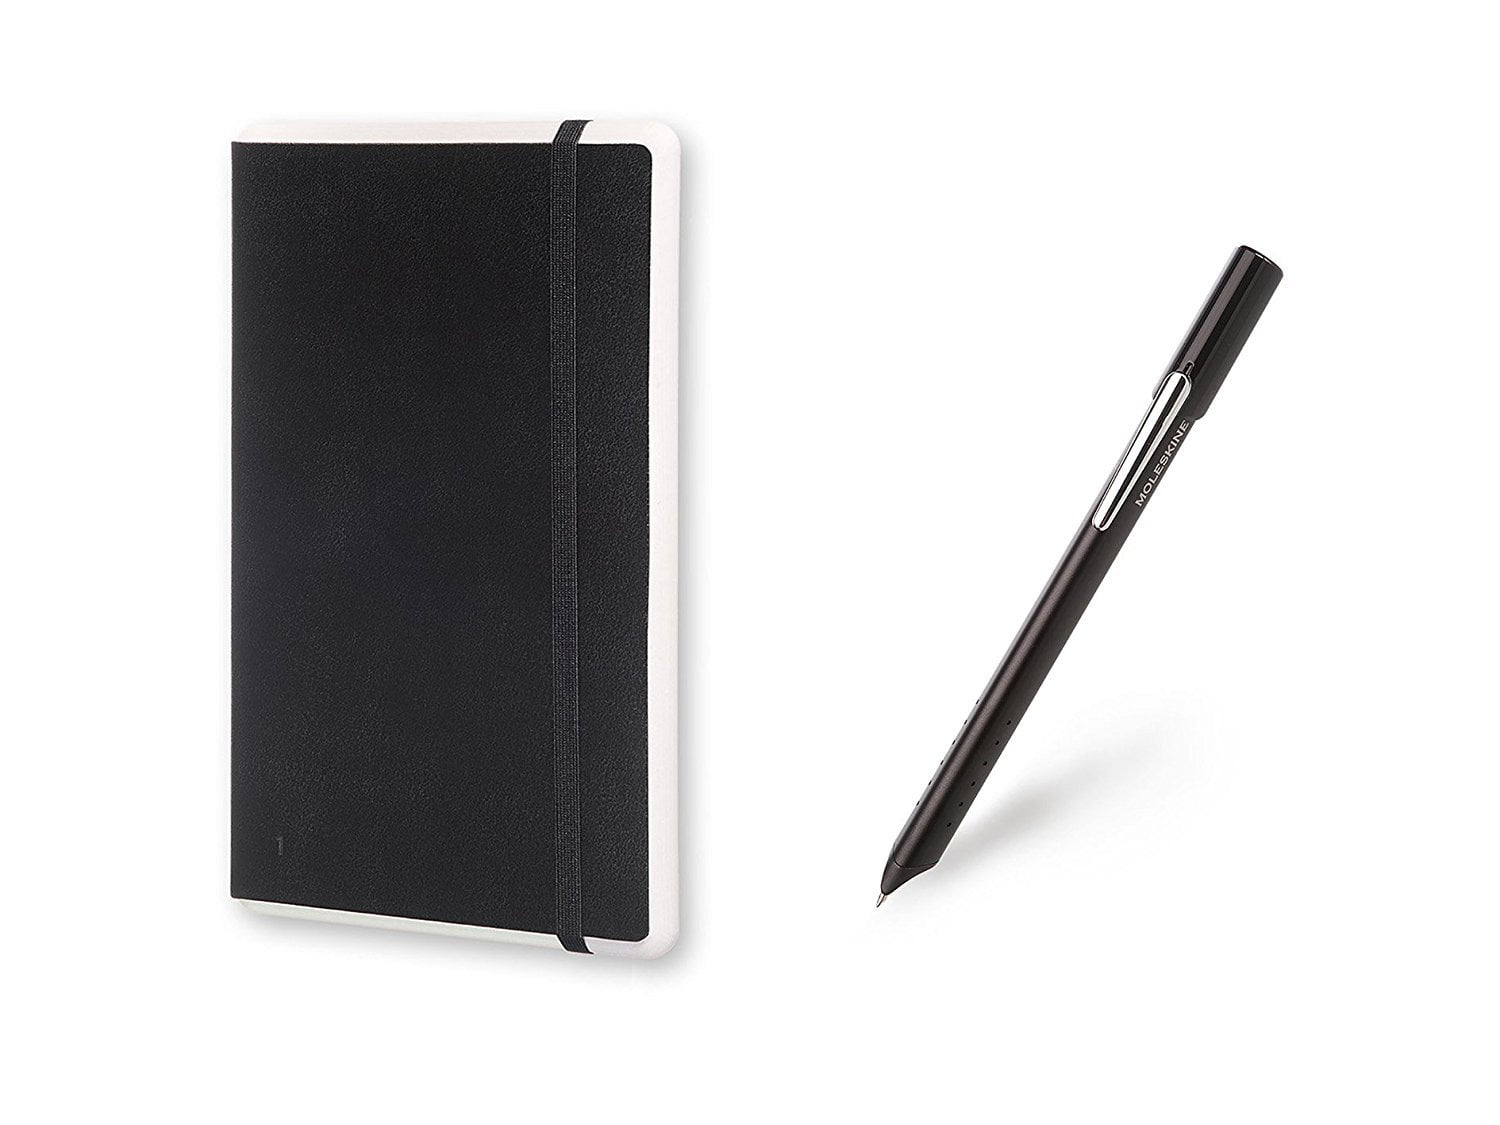 Moleskine 3 Set Bundle Ruled Smart Notebook And Smart Pen Lg Hard Cover  Black : Target